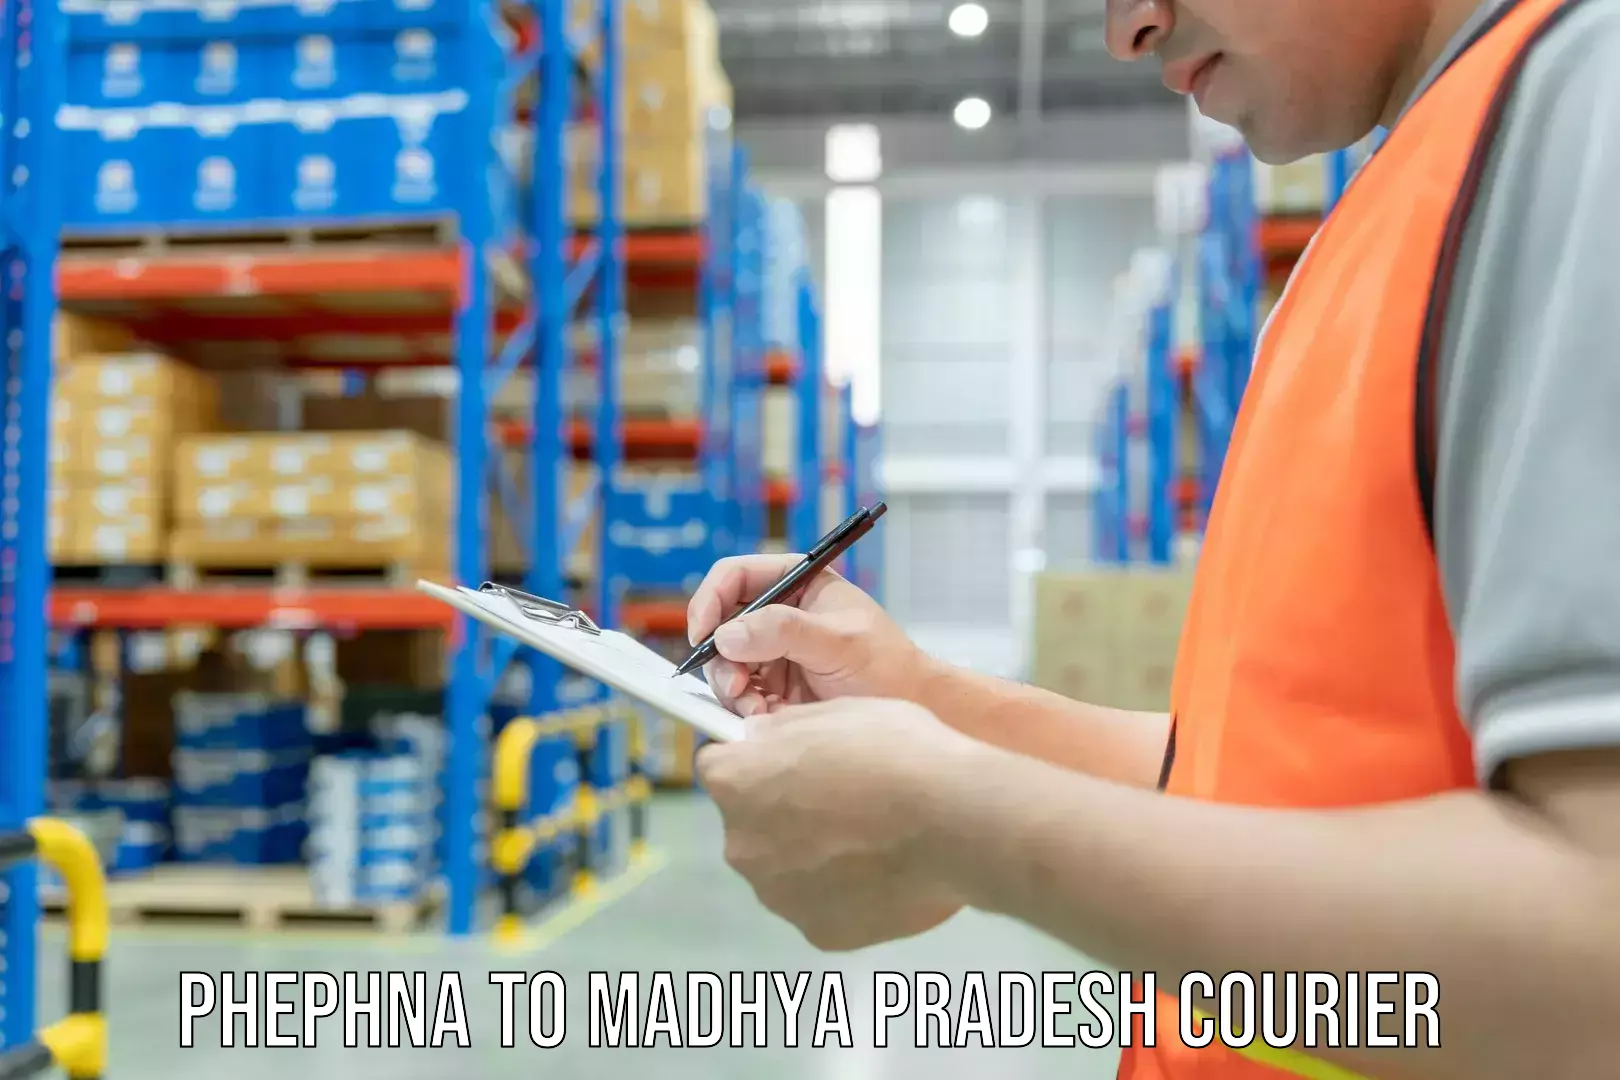 Furniture movers and packers Phephna to Madhya Pradesh